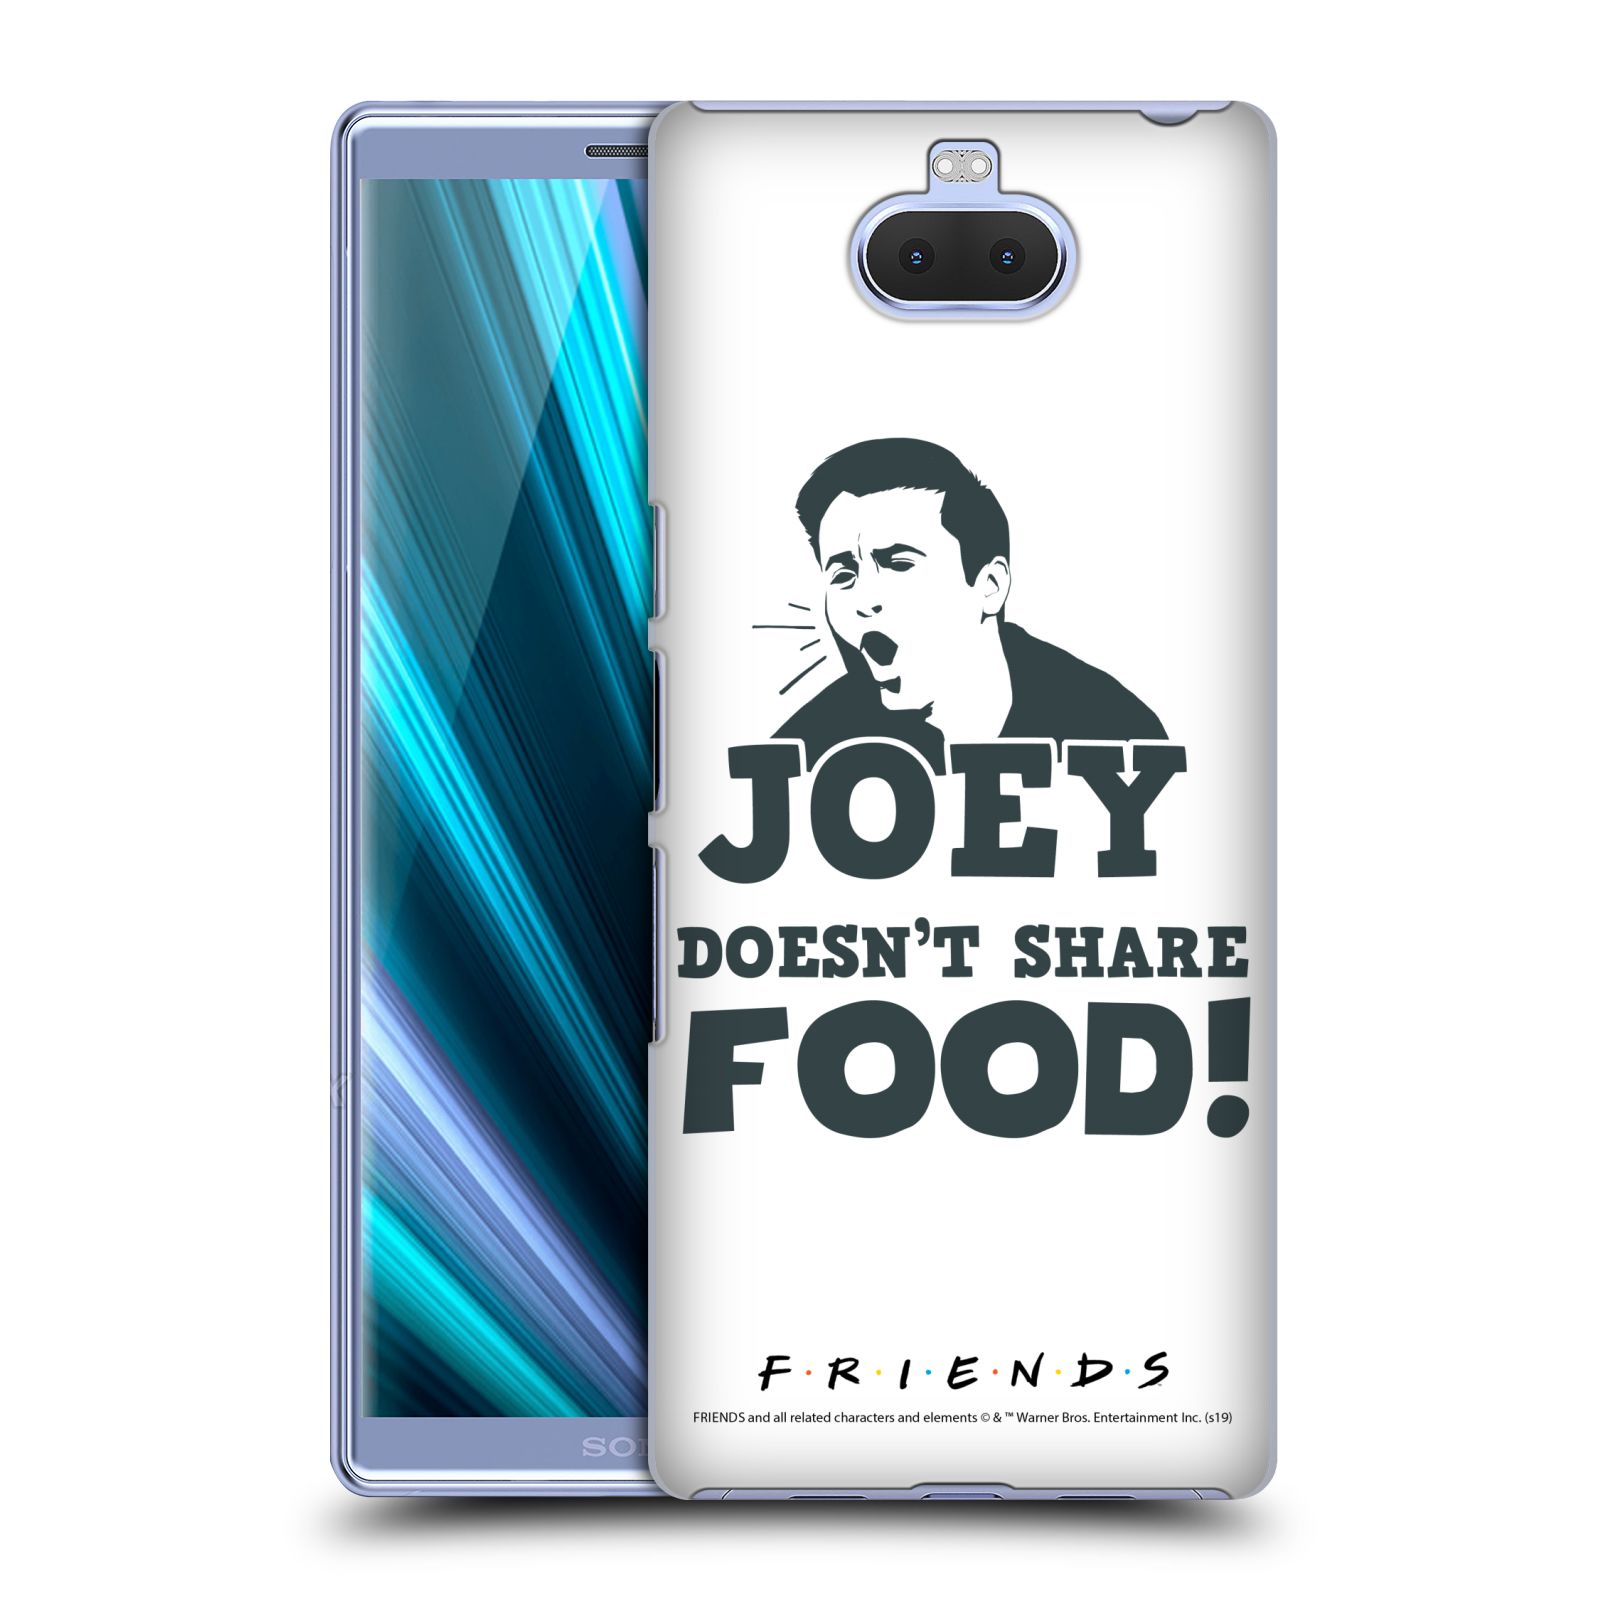 Pouzdro na mobil Sony Xperia 10 Plus - HEAD CASE - Seriál Přátelé - Joey se o jídlo nedělí